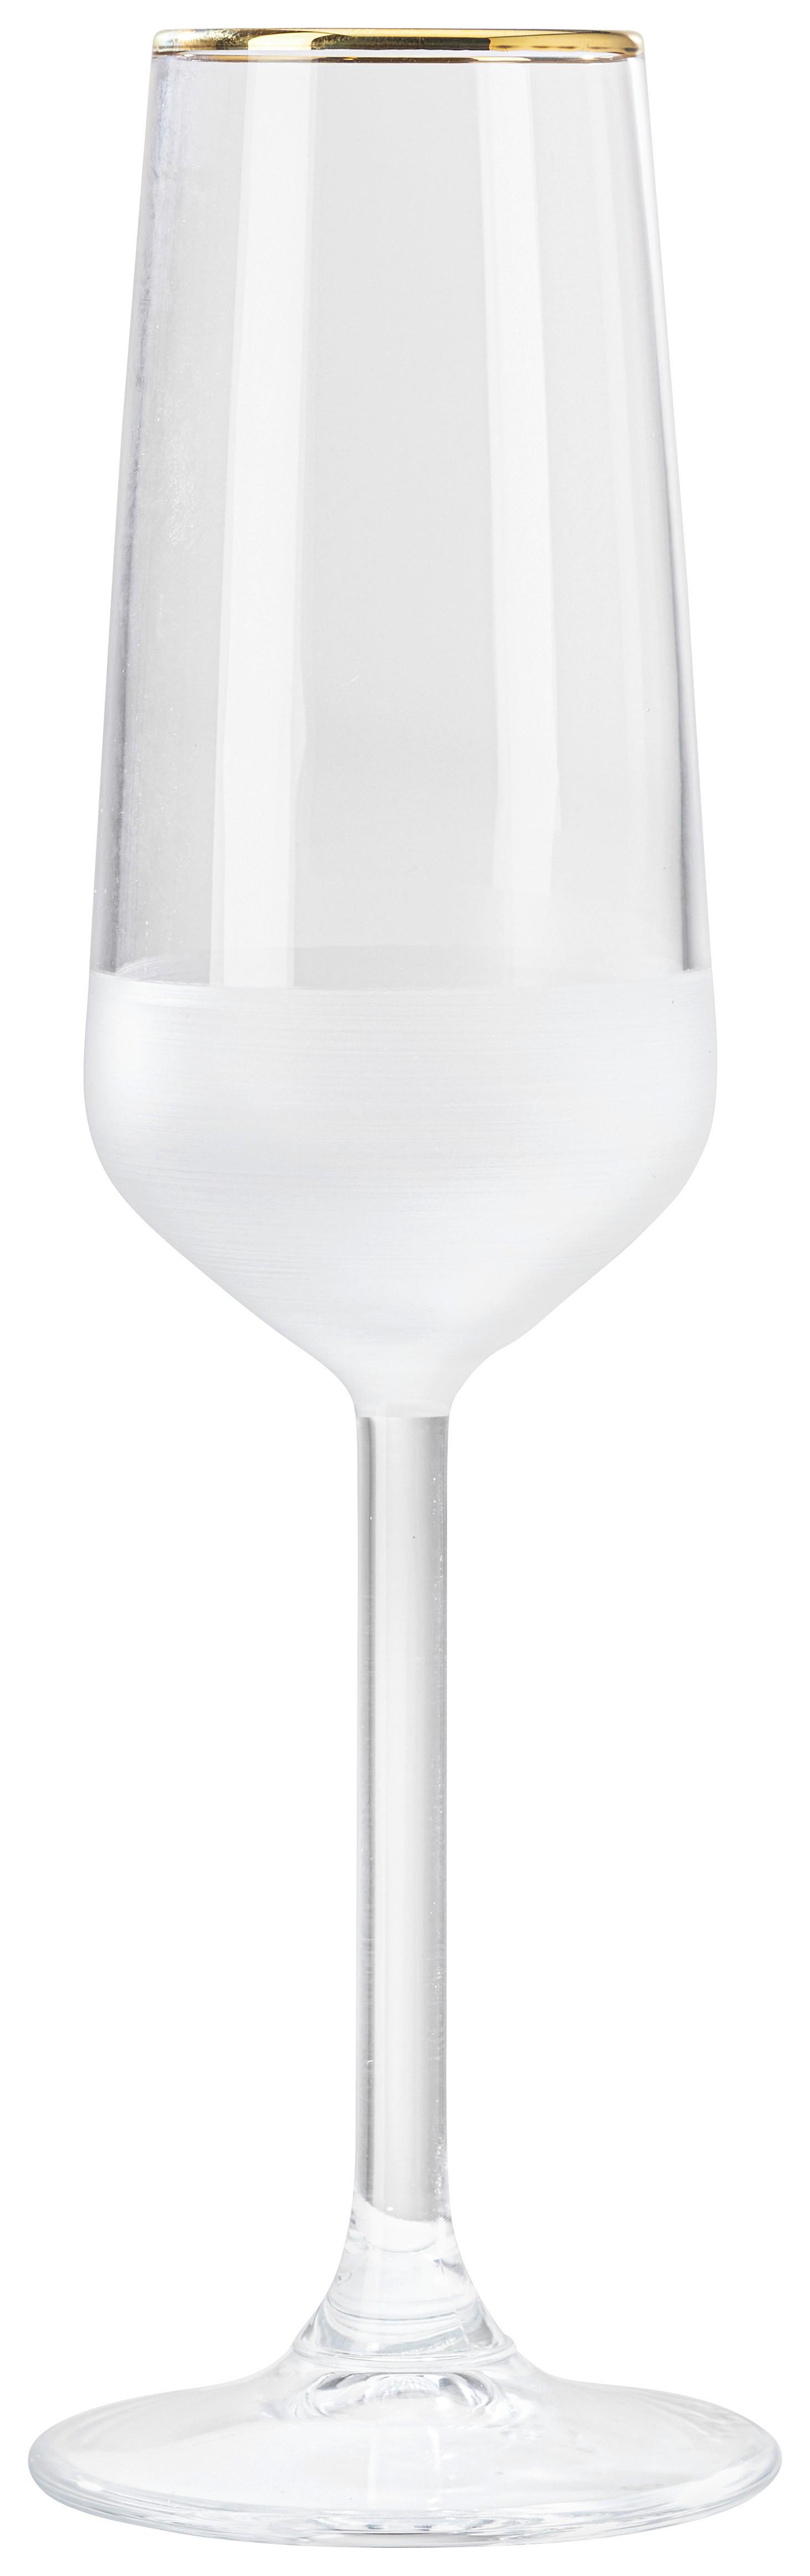 Sektglas Goldline in Weiss ca. 195ml - Weiss, Modern, Glas (4,5/22,6cm) - Premium Living